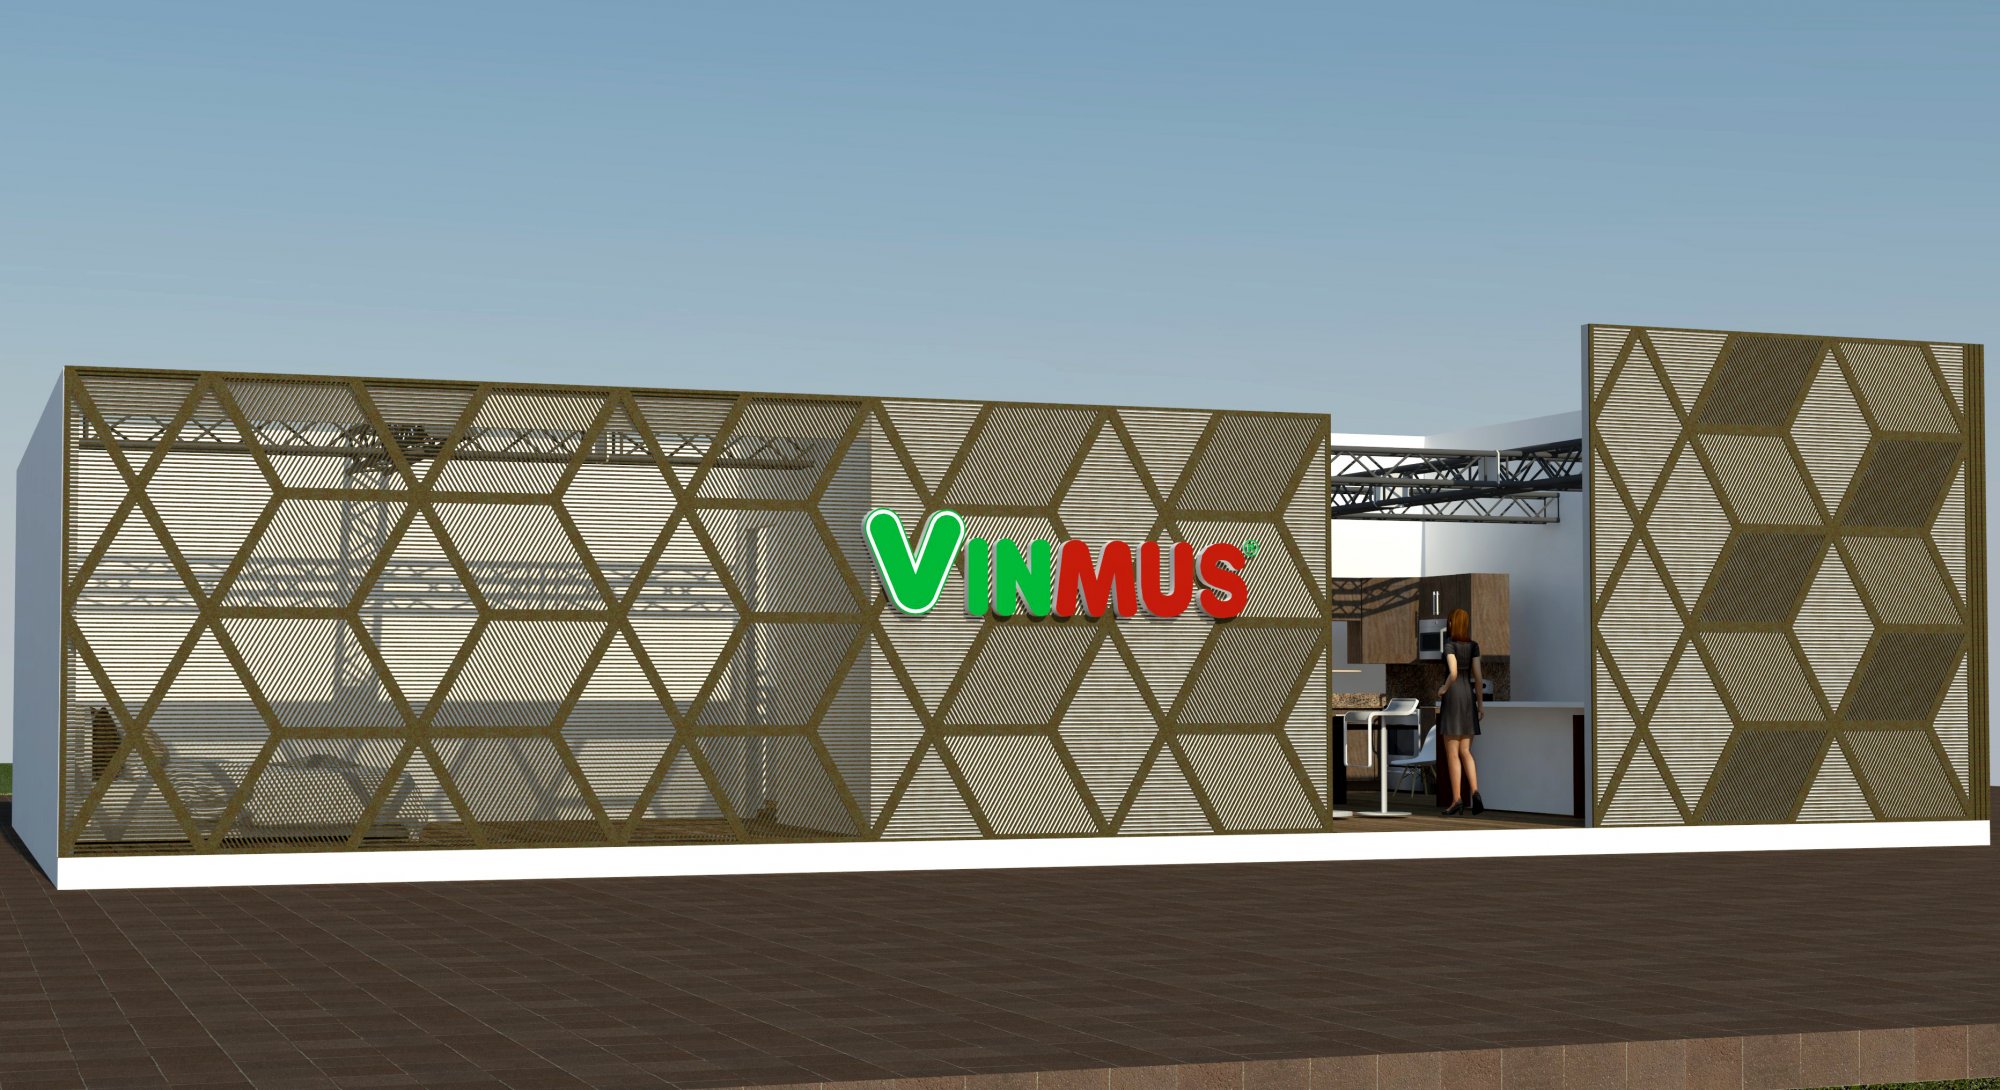 noi-that-Vinmus-trien-lam-vietbuild-2019_1